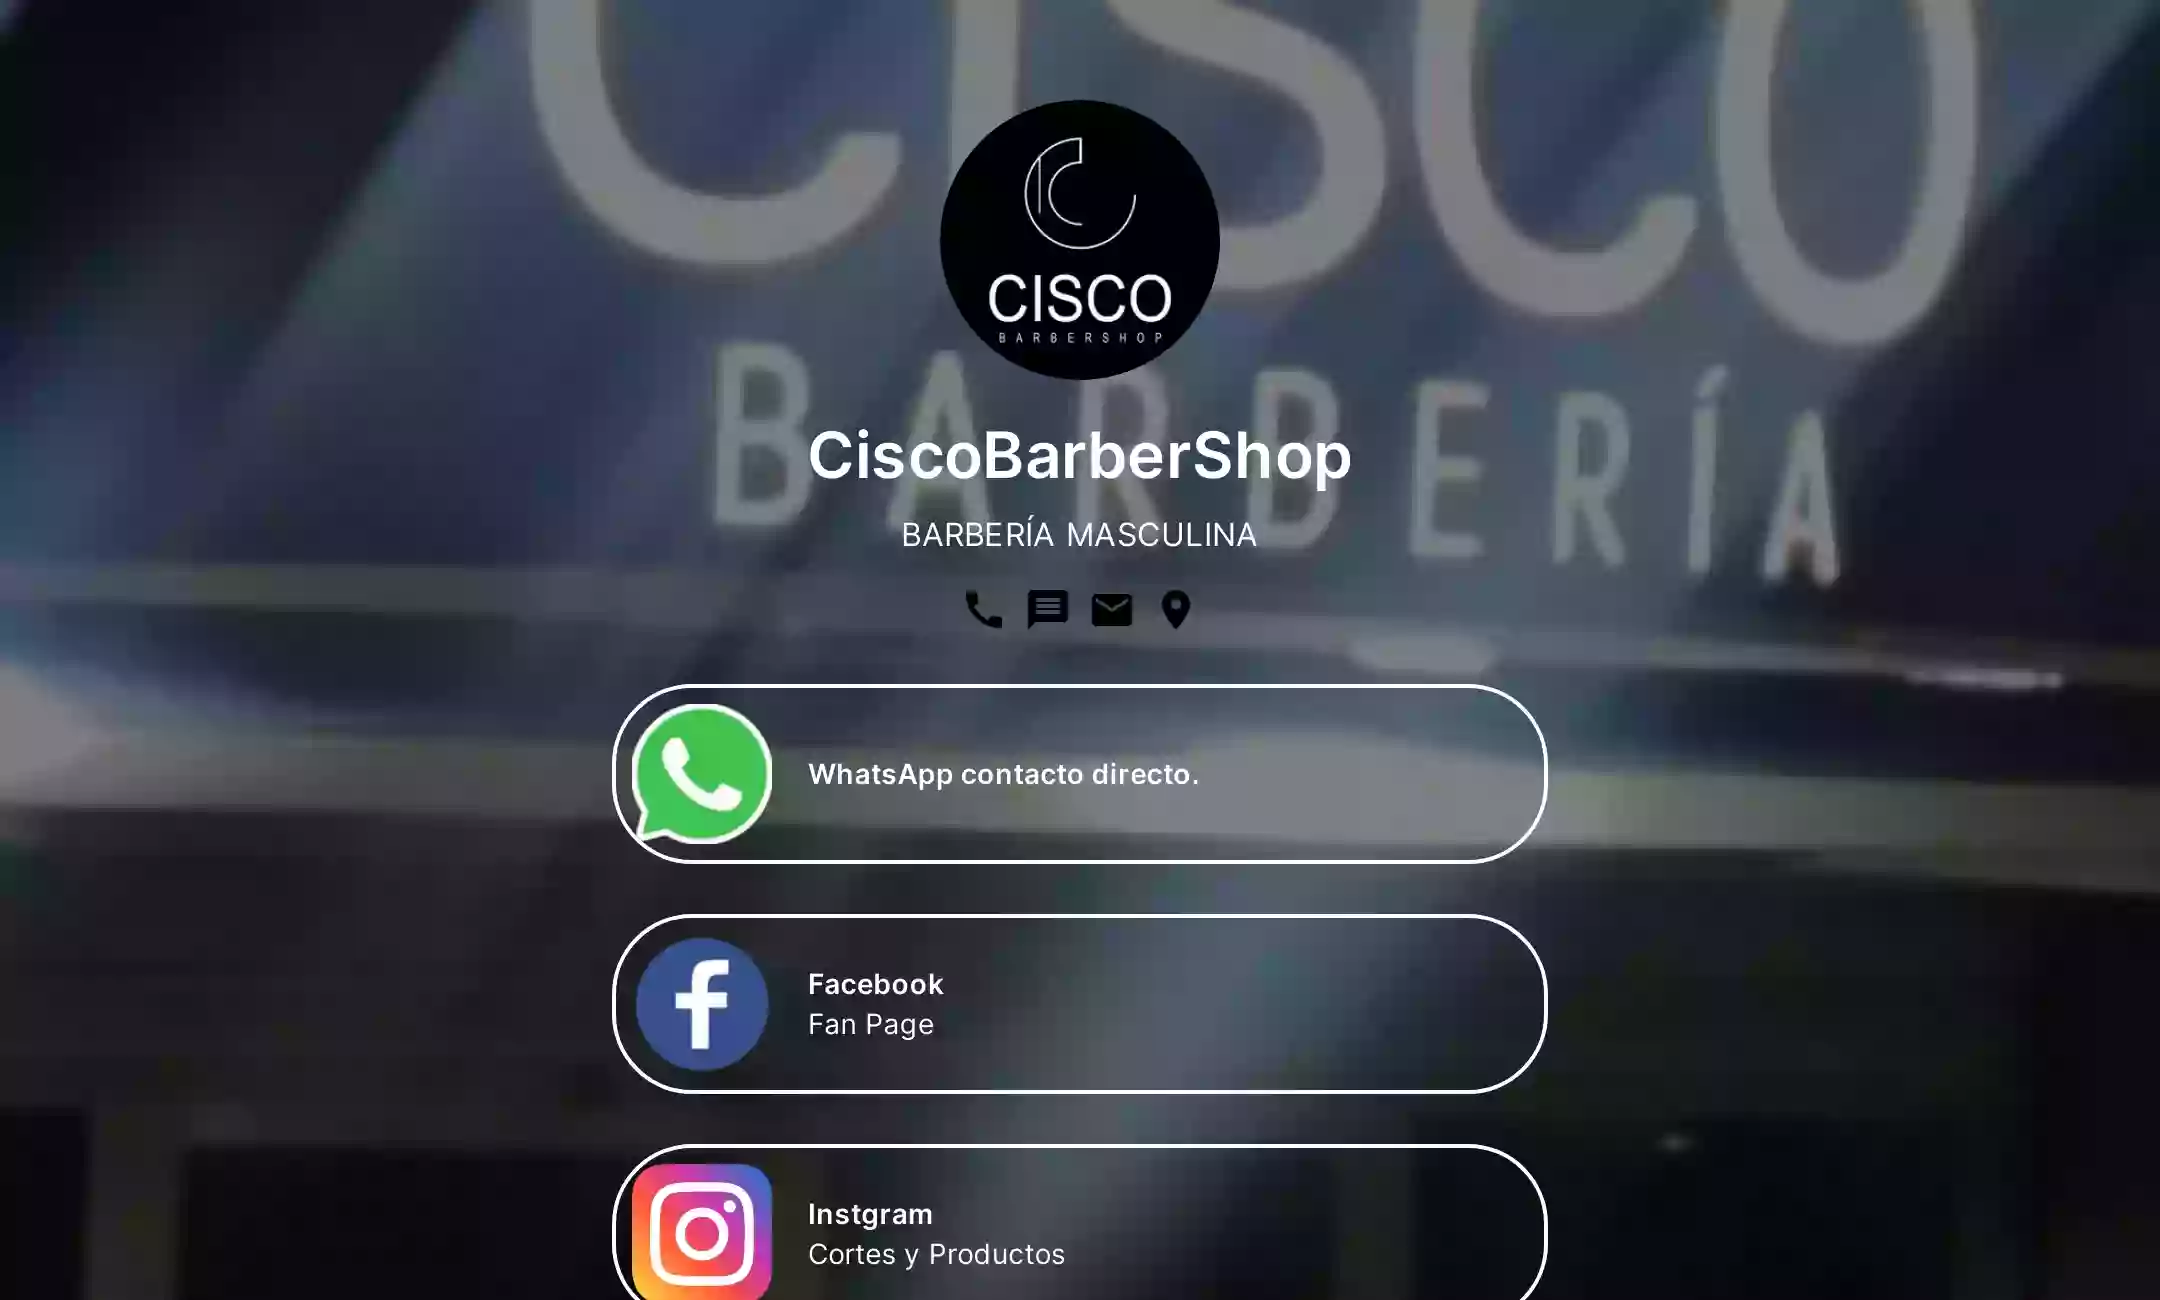 Barbería CiscoBarberShop